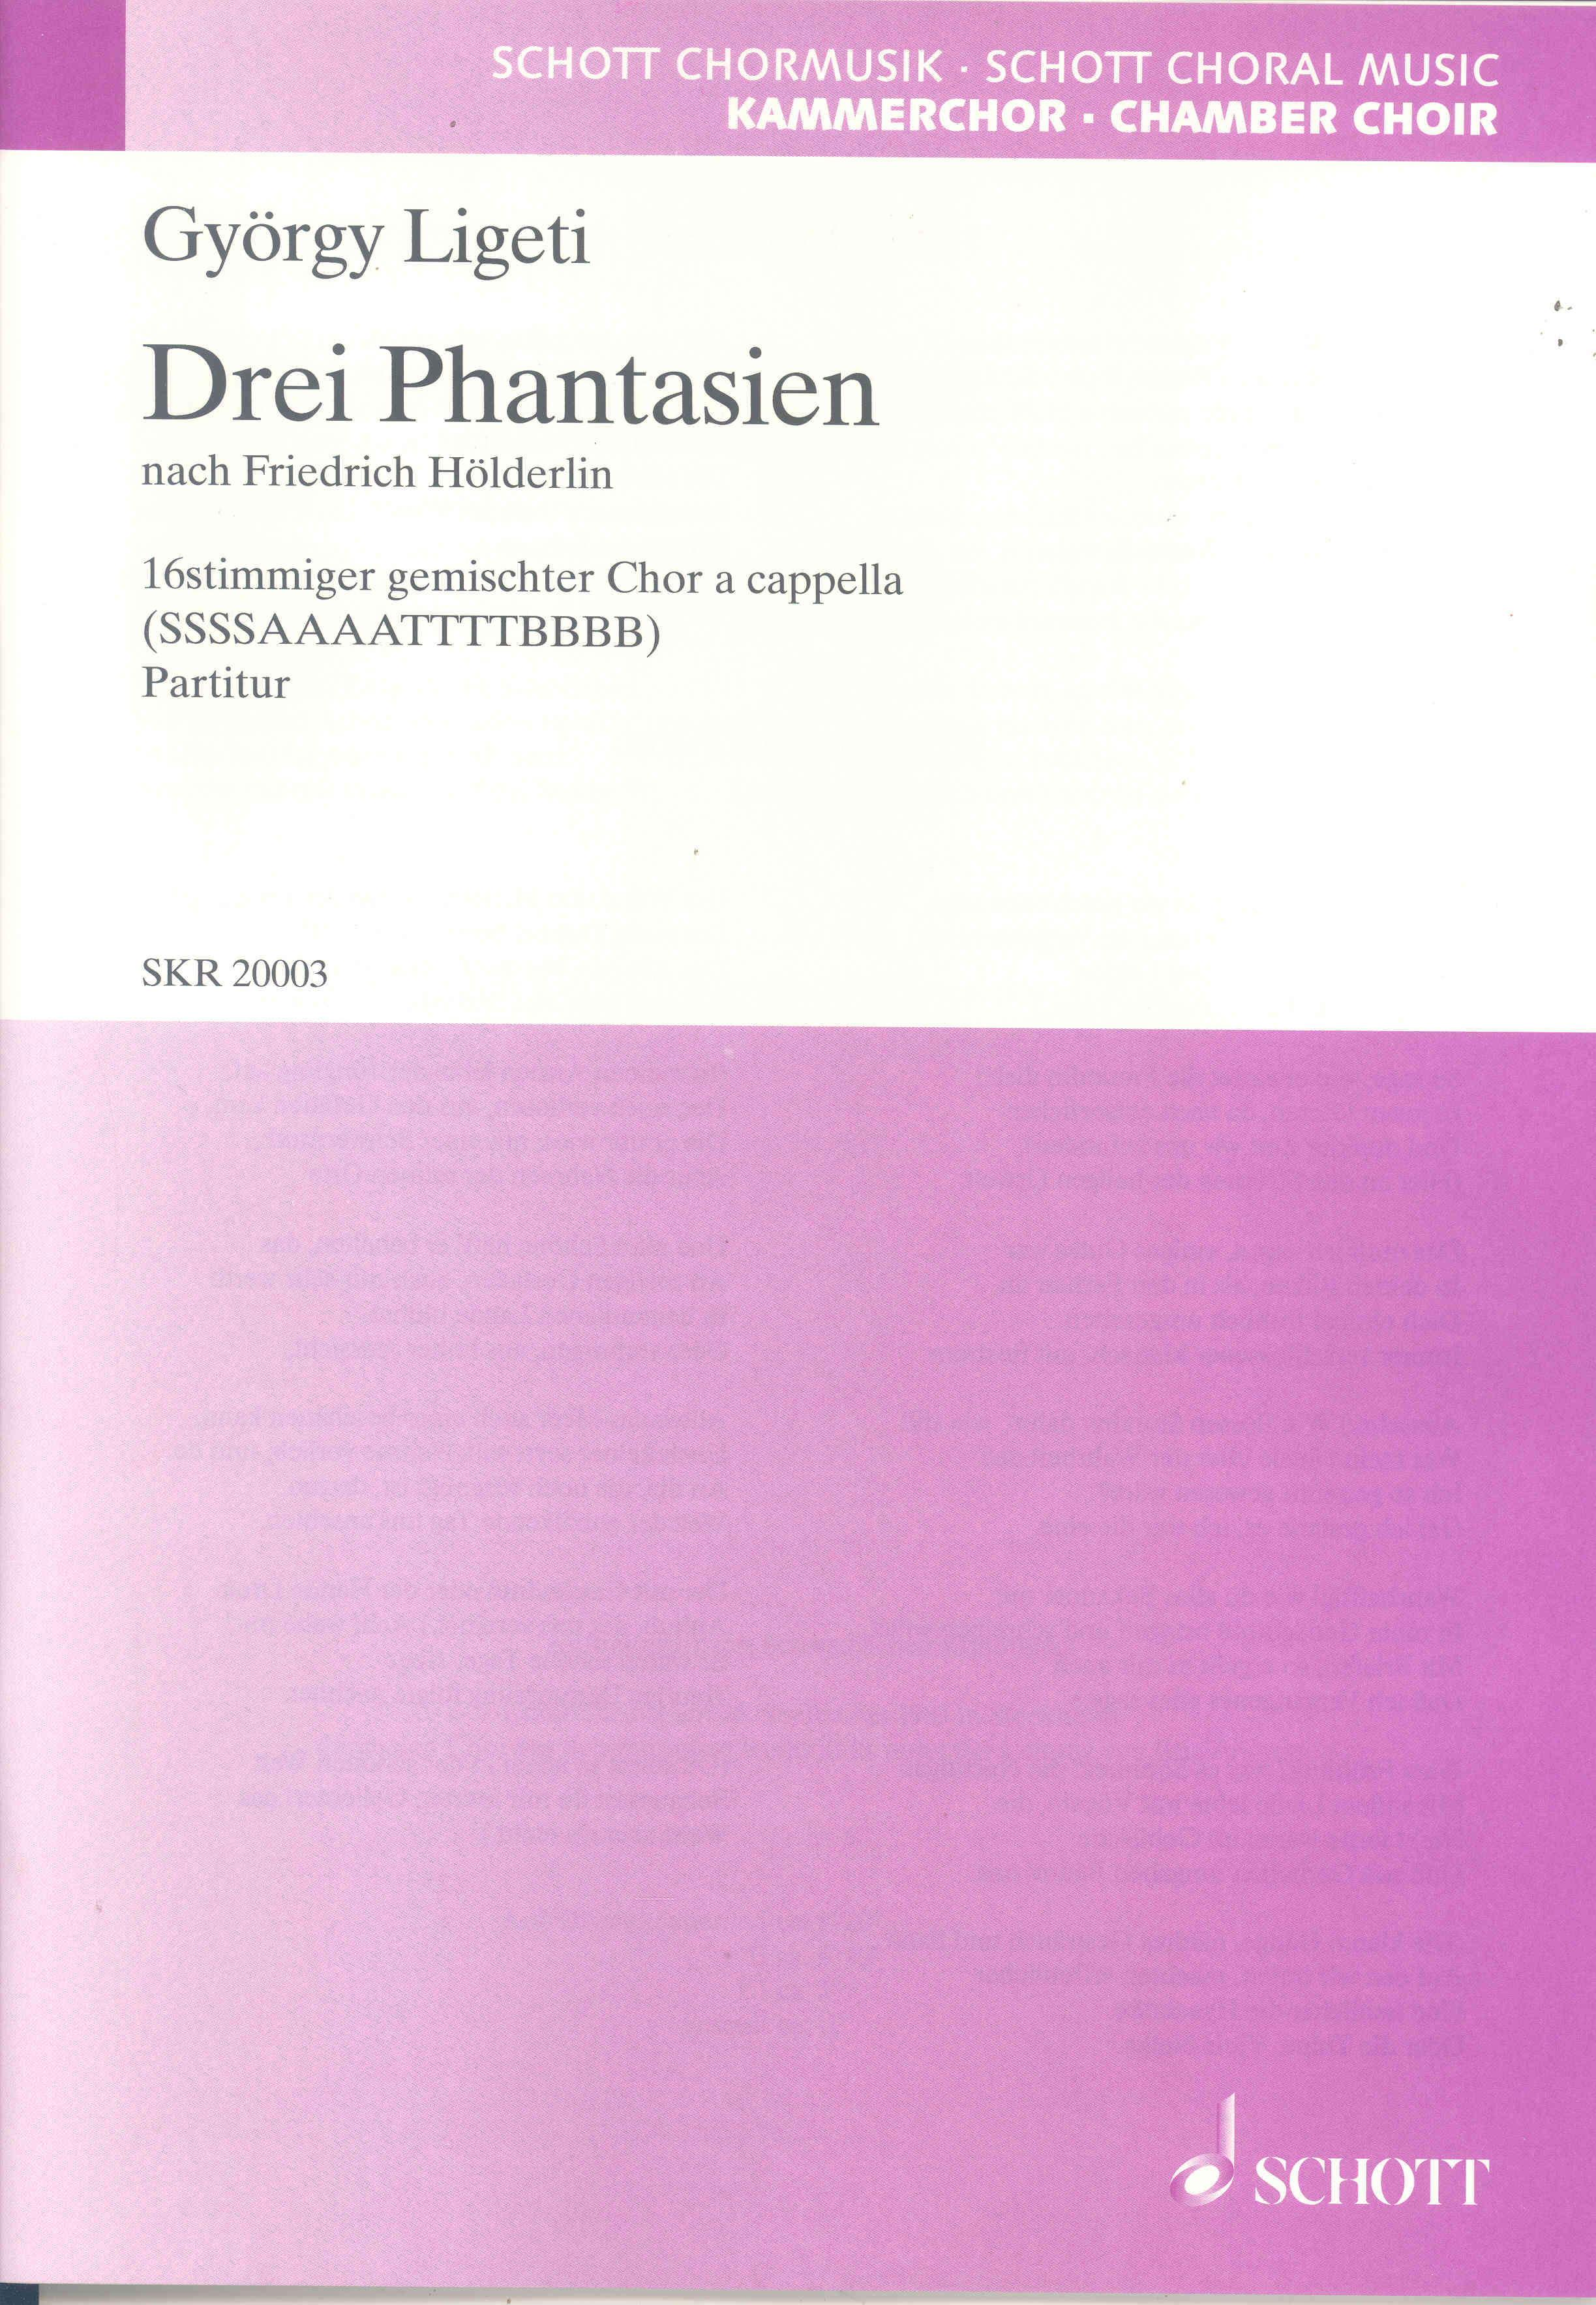 Ligeti 3 Phantasien Choral Score Min 20 Copies Sheet Music Songbook